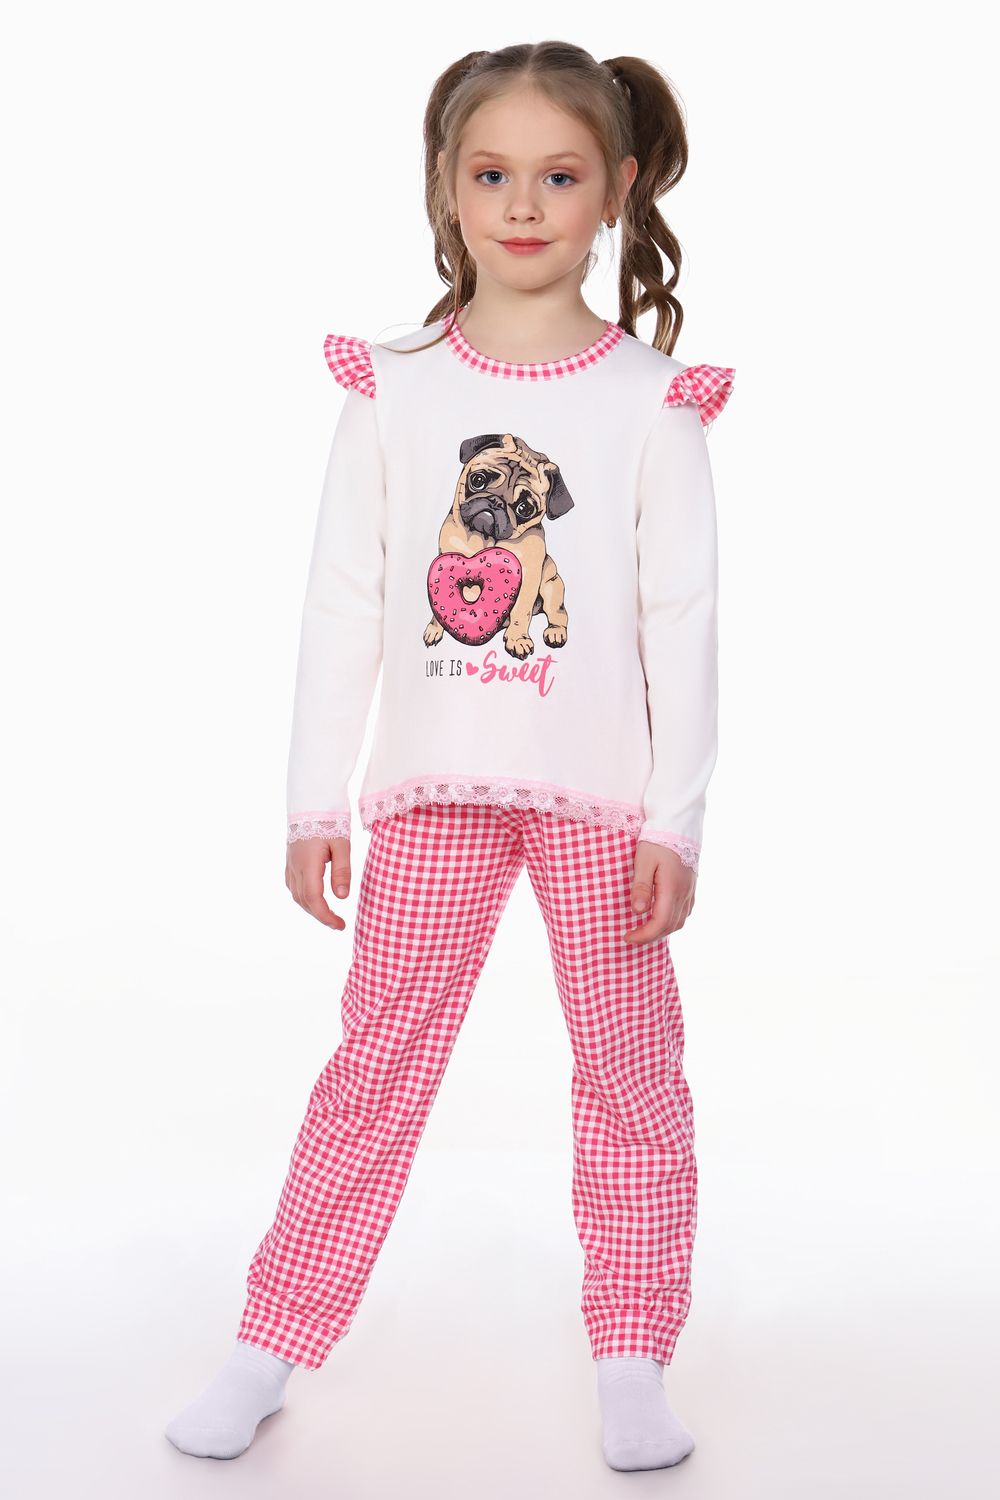 Пижама для девочки Мопс арт. ПД-016-032 - крем/розовая клетка